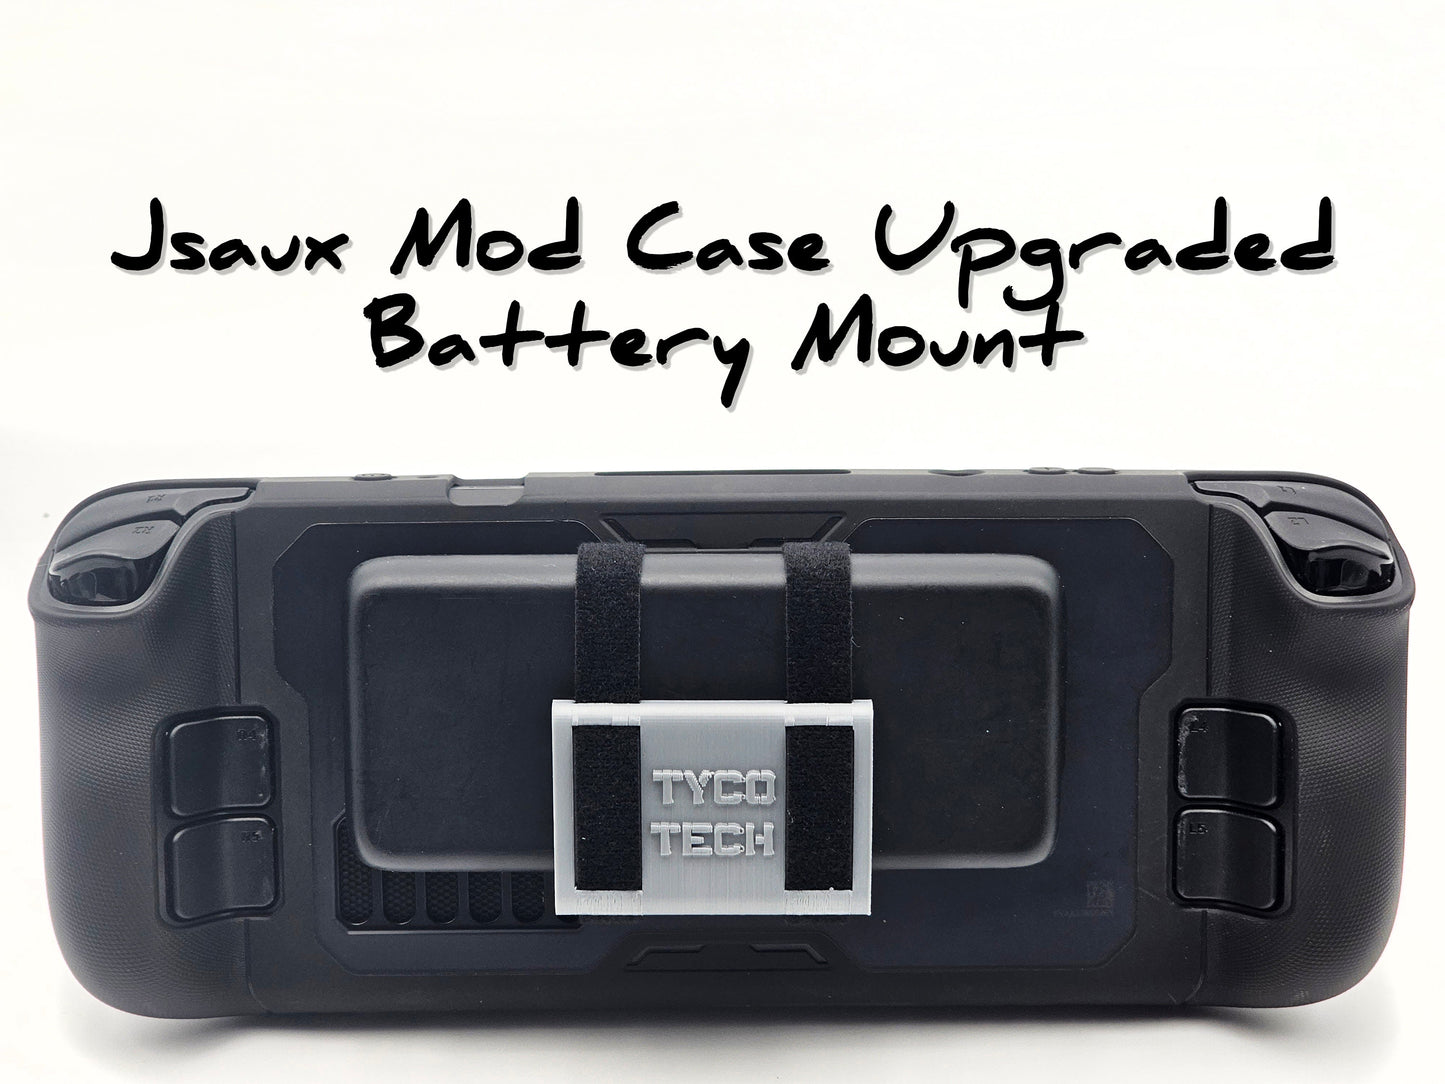 Soporte de batería Steam Deck Jsaux ModCase: MUCHO más seguro que el soporte de batería original